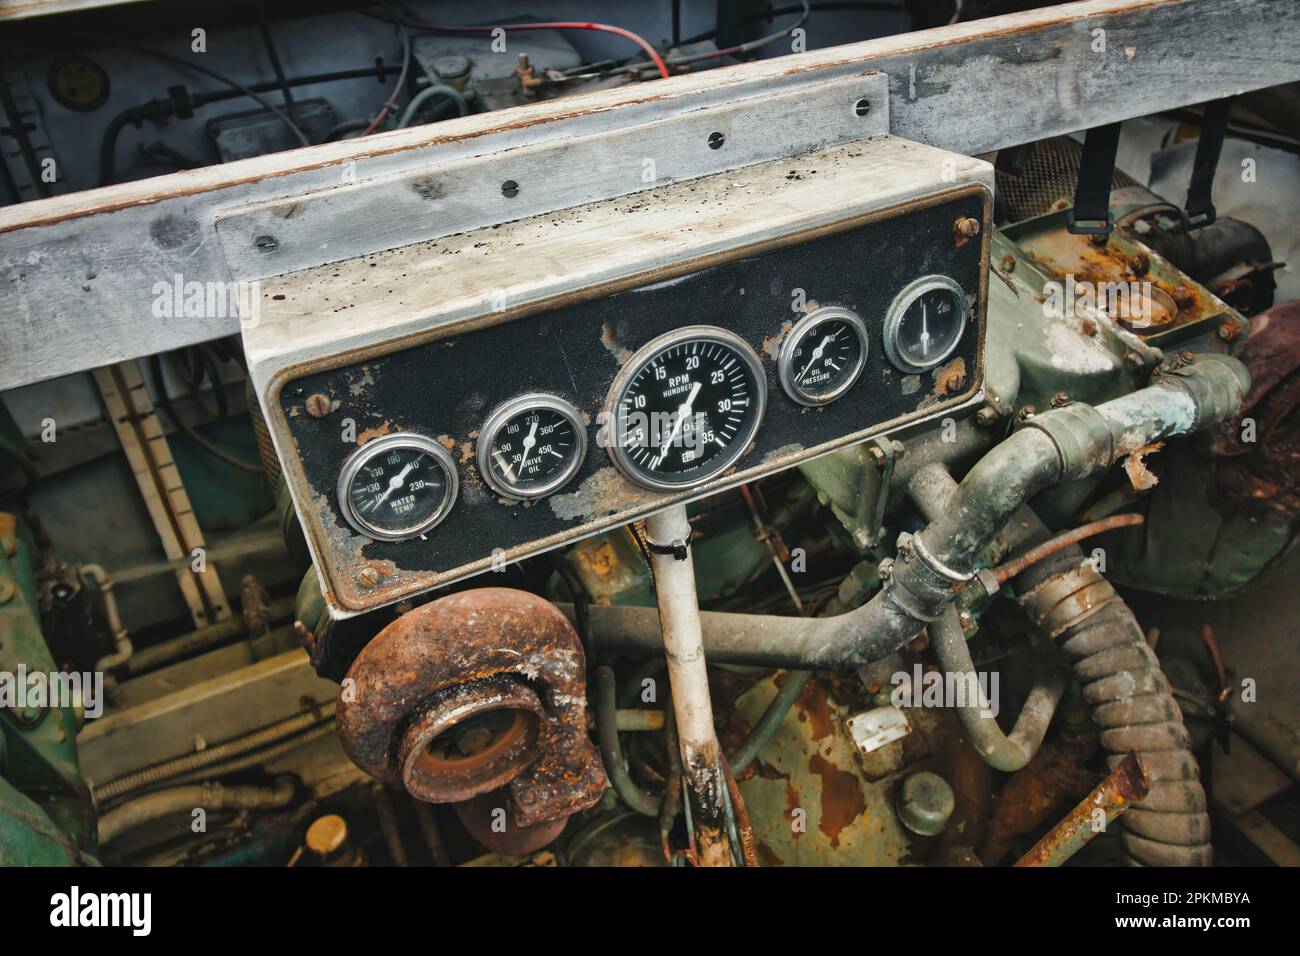 Messuhr für einen Dieselmotor in einem Motorraum eines Boots, die Drehzahl und andere Messwerte anzeigt Stockfoto